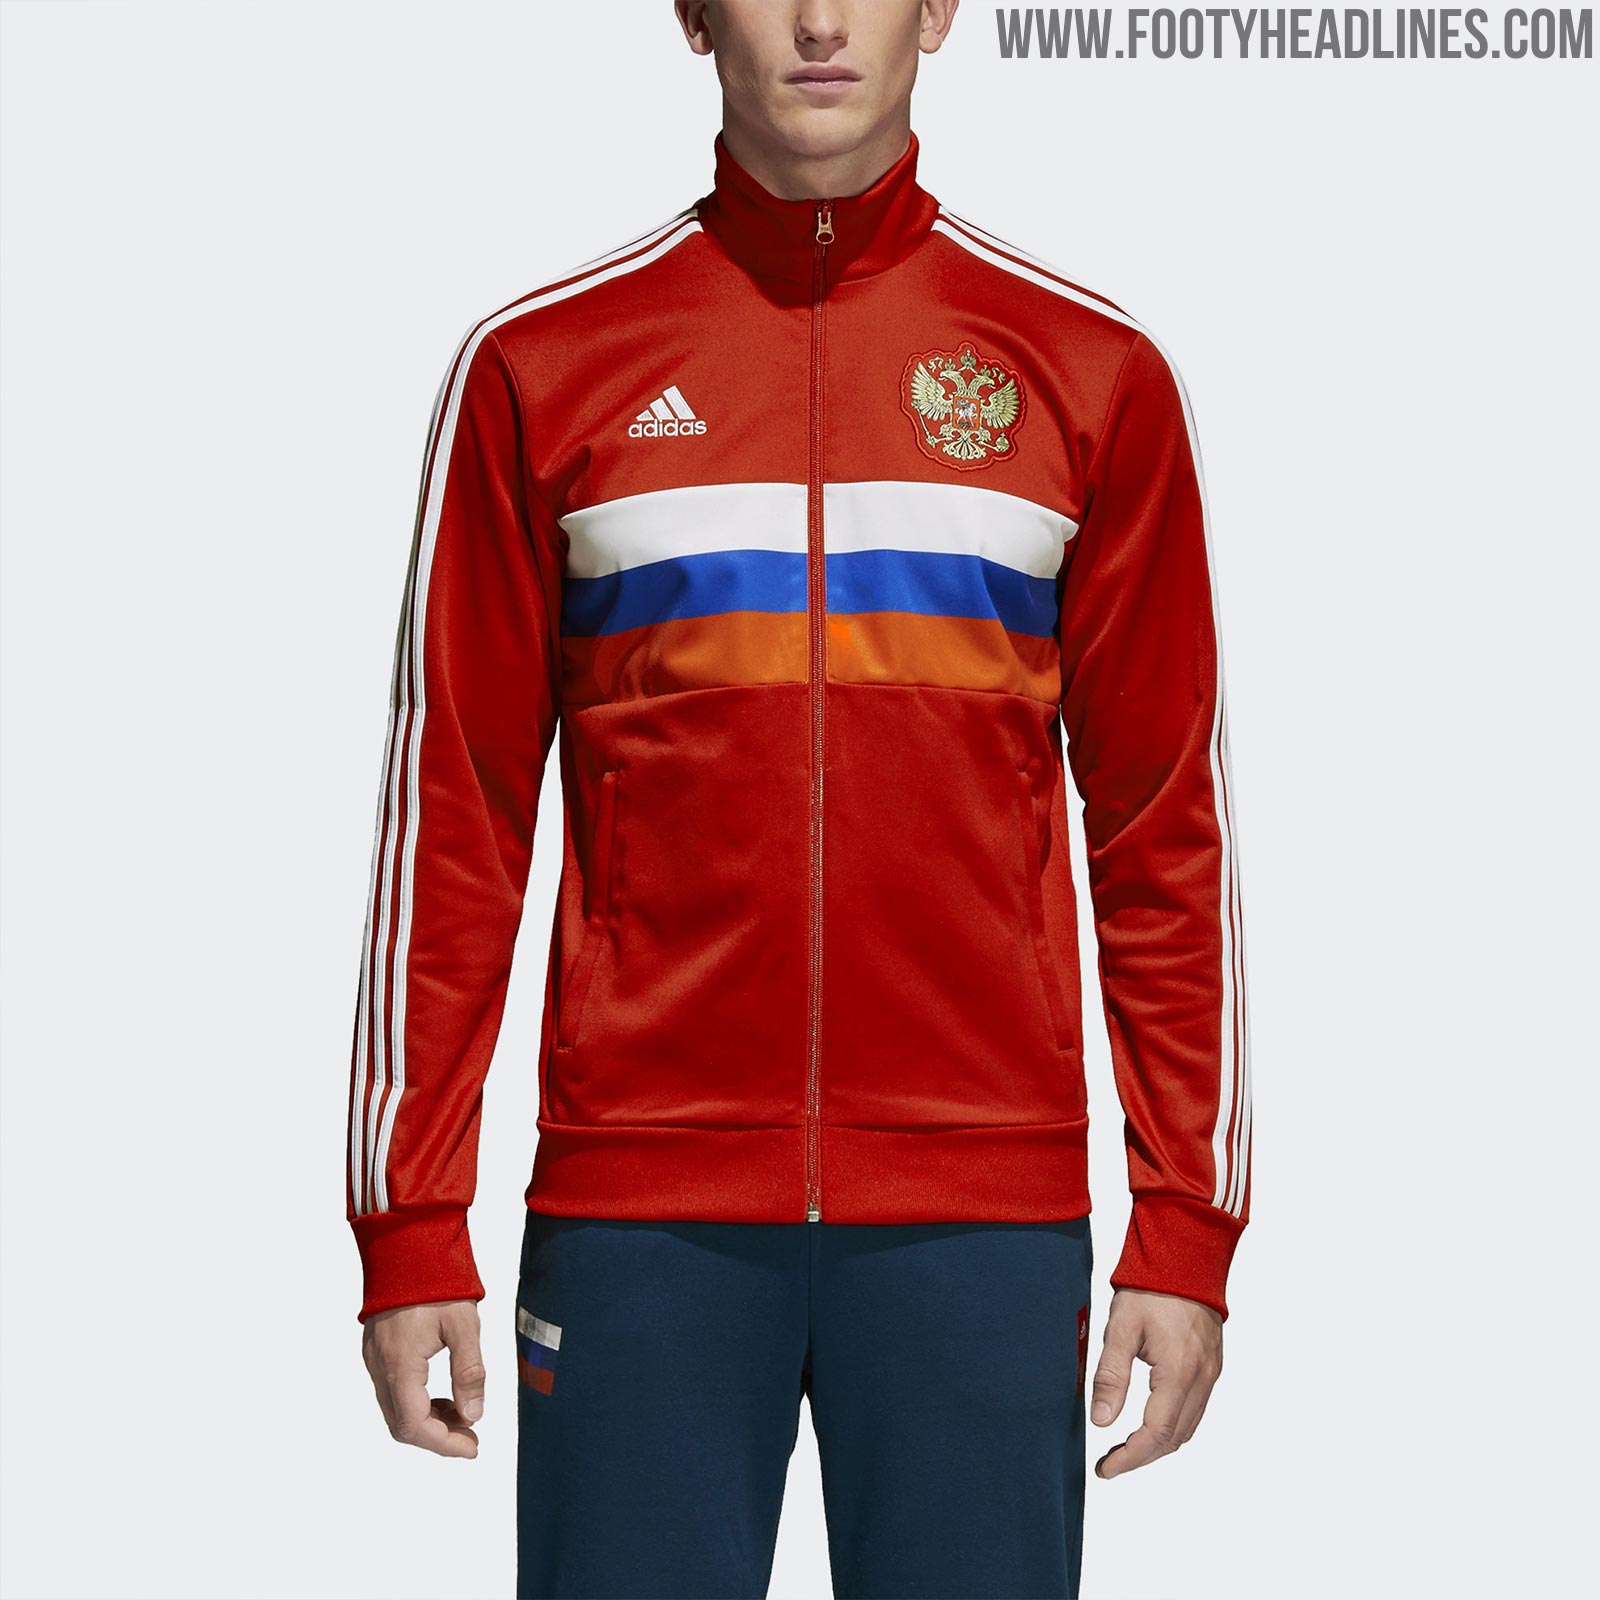 russia adidas jacket